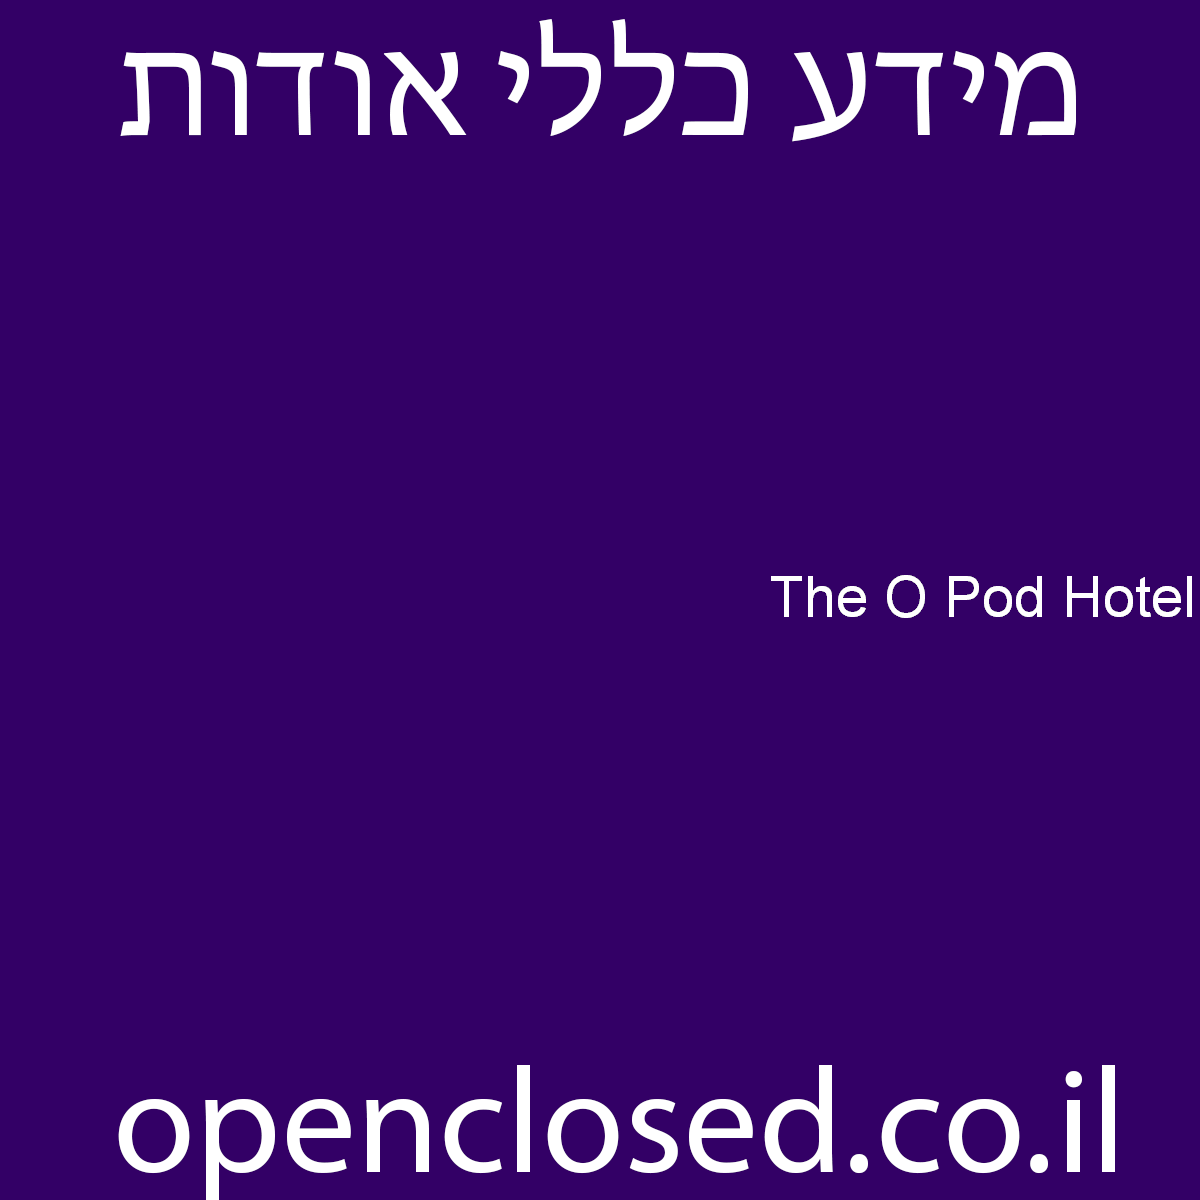 The O Pod Hotel